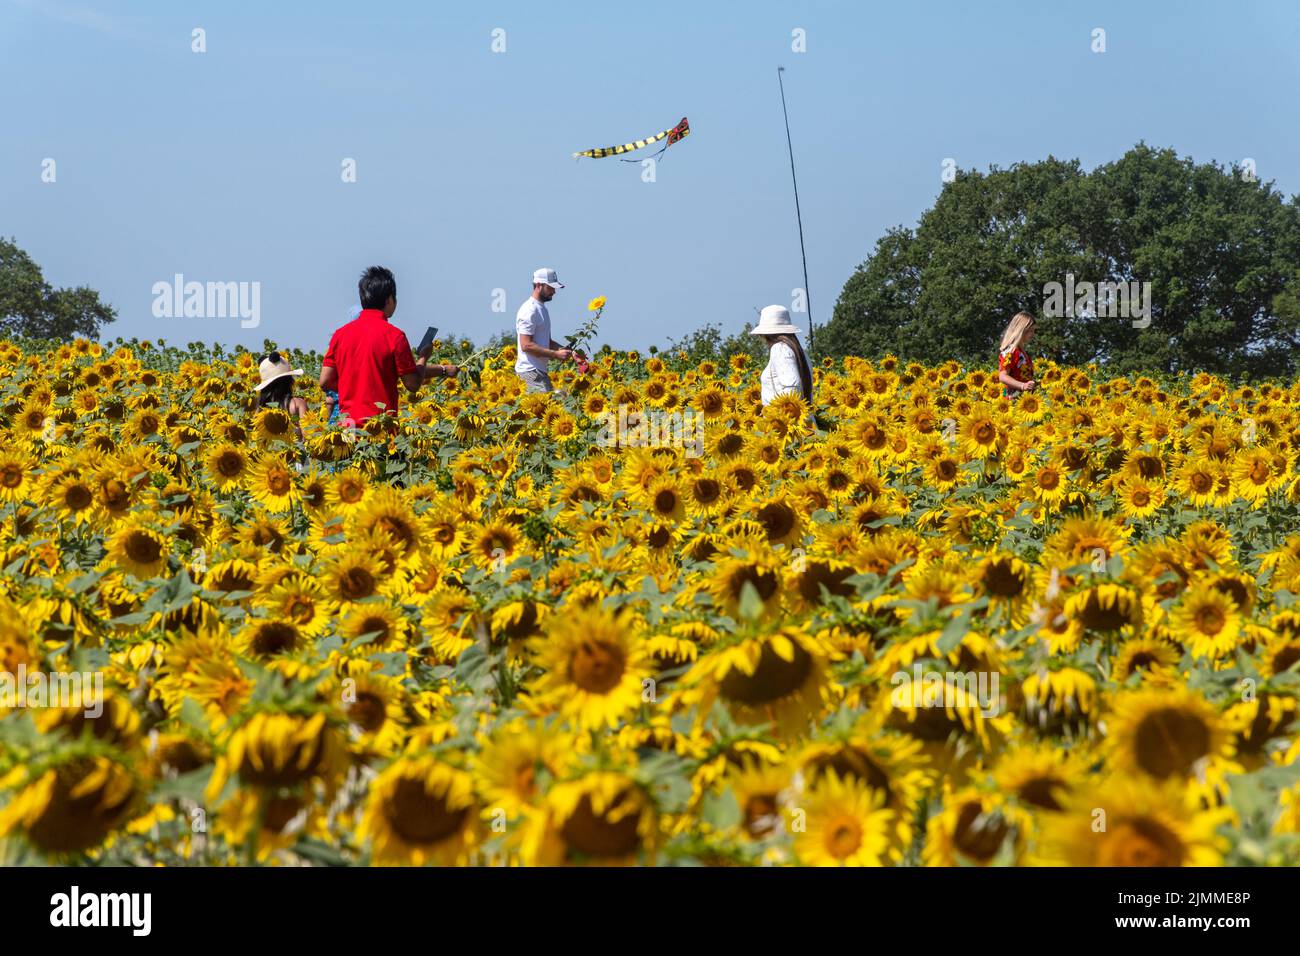 Champ de tournesols en août ou en été avec des personnes cueillant des fleurs, Hampshire, Angleterre, Royaume-Uni Banque D'Images